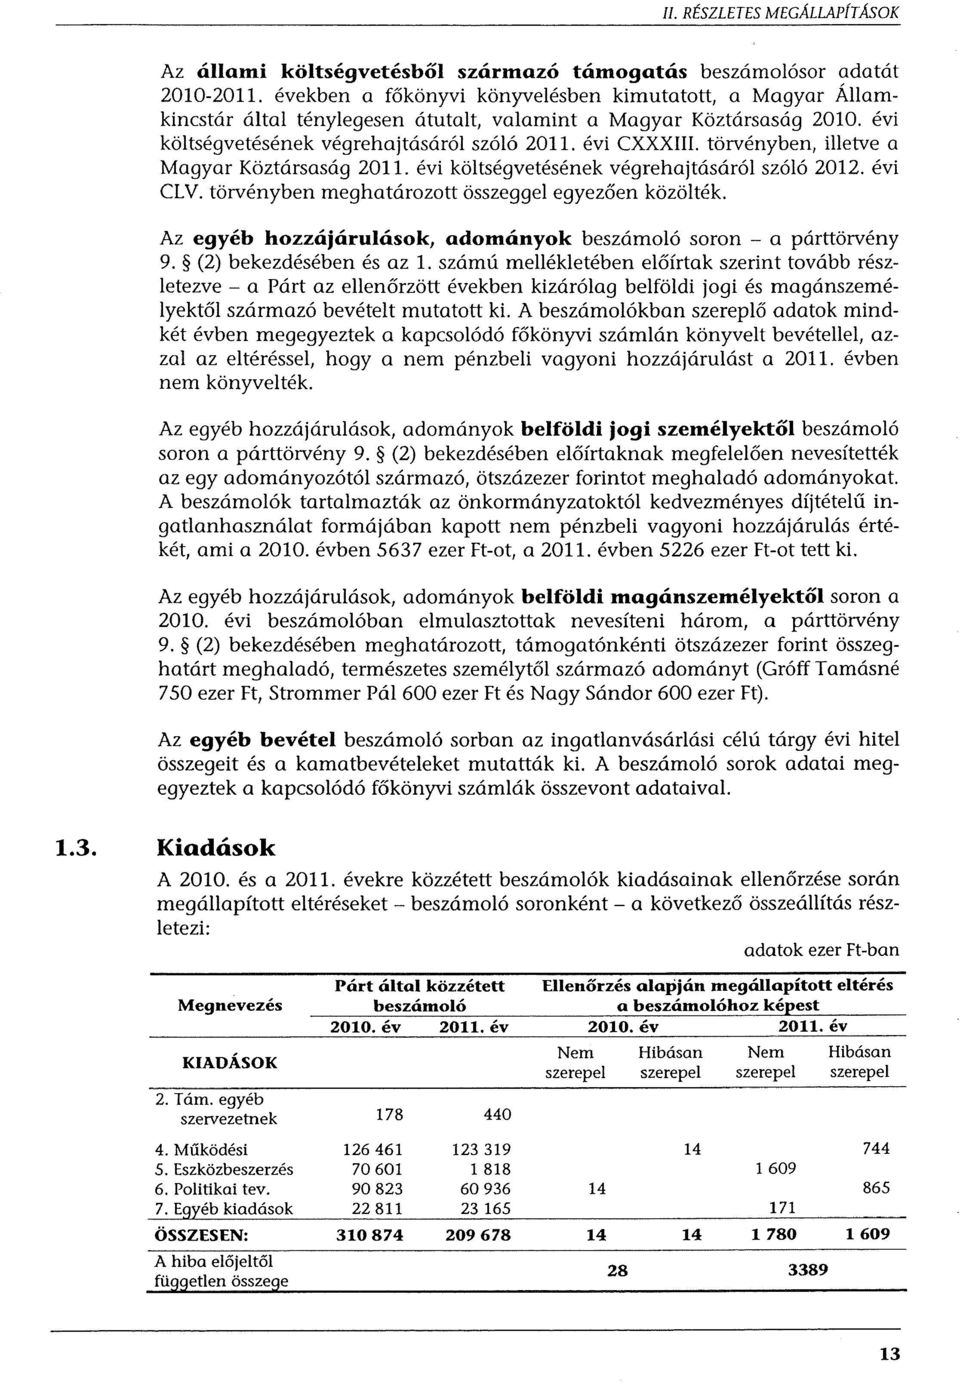 törvényben, illetve a Magyar Köztársaság 2011. évi költségvetésének végrehajtásáról szóló 2012. évi CLV. törvényben meghatározott összeggel egyezően közölték.